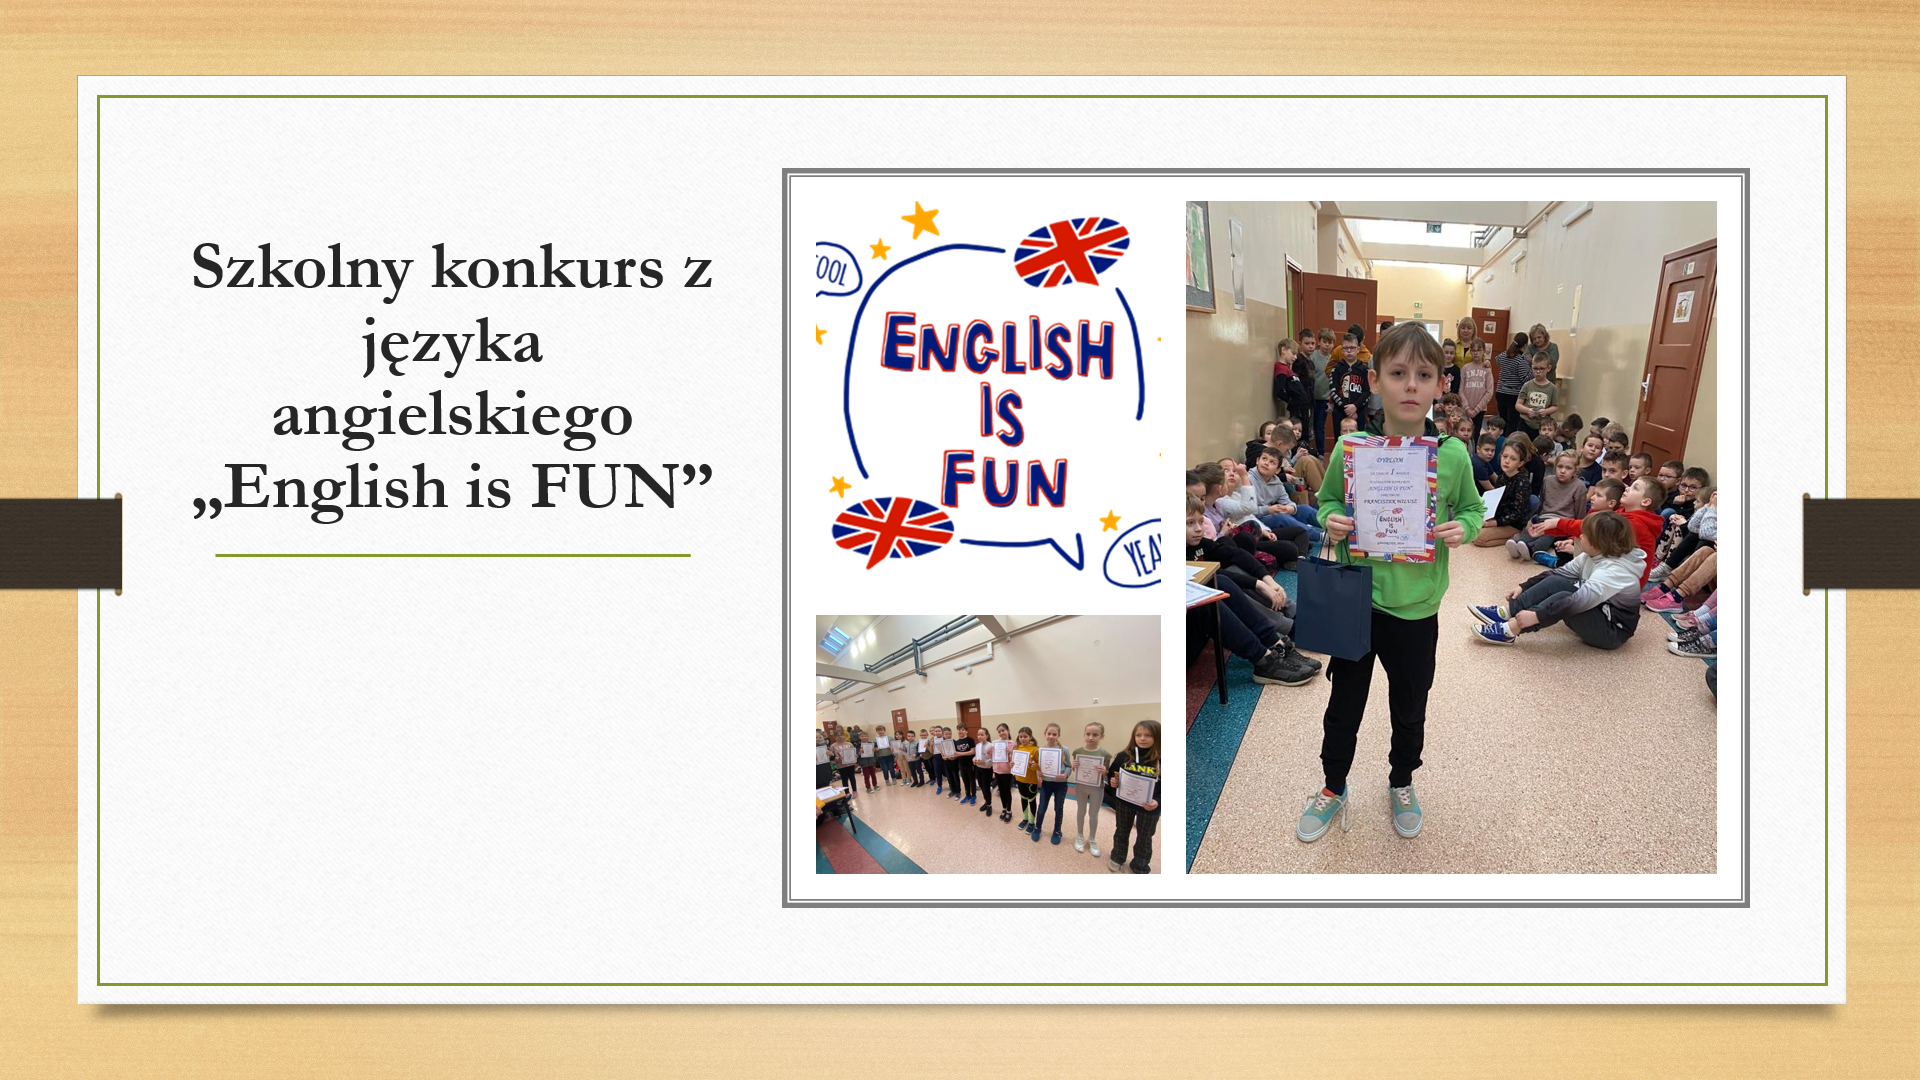 Szkolny konkurs z języka angielskiego "English is FUN".